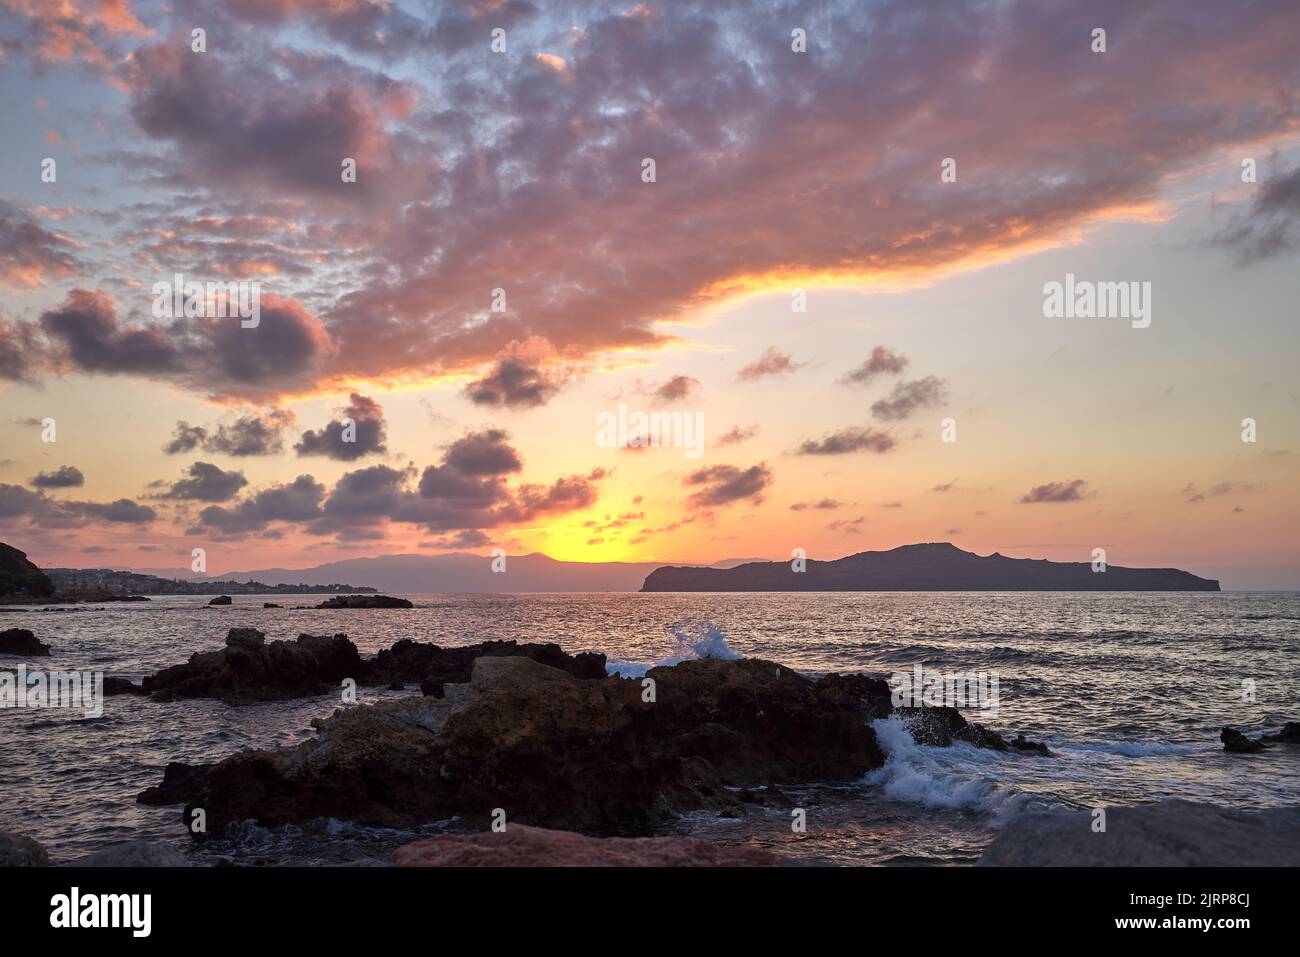 Wunderschönes Meer und Wellen bei Sonnenuntergang in Chania Kreta - Griechenland Stockfoto